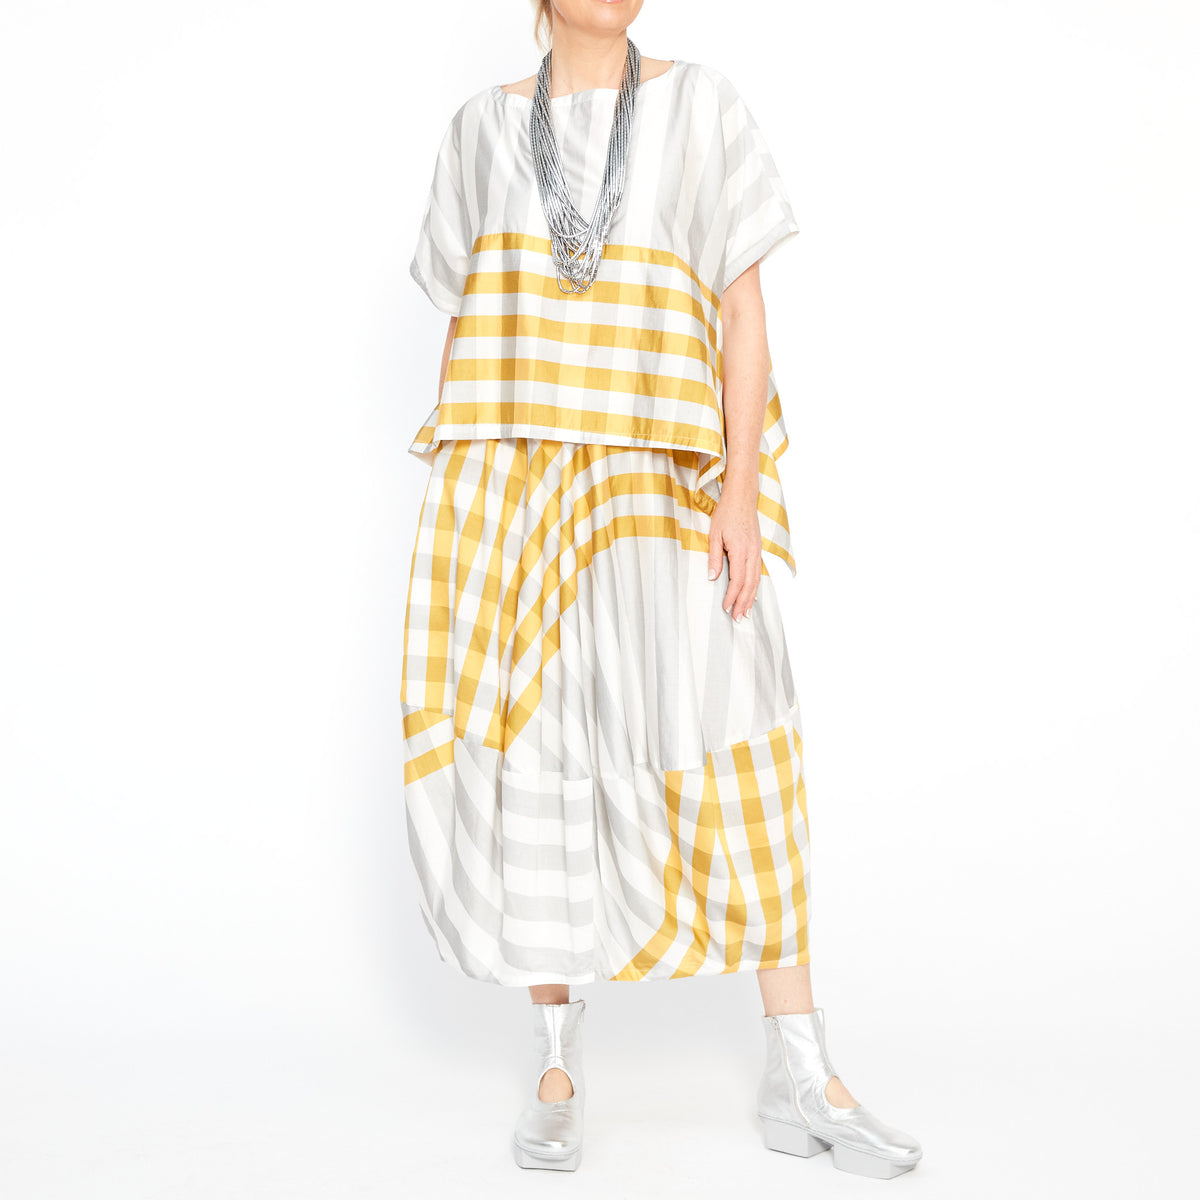 MU241622 Gridded Skirt in Lemon